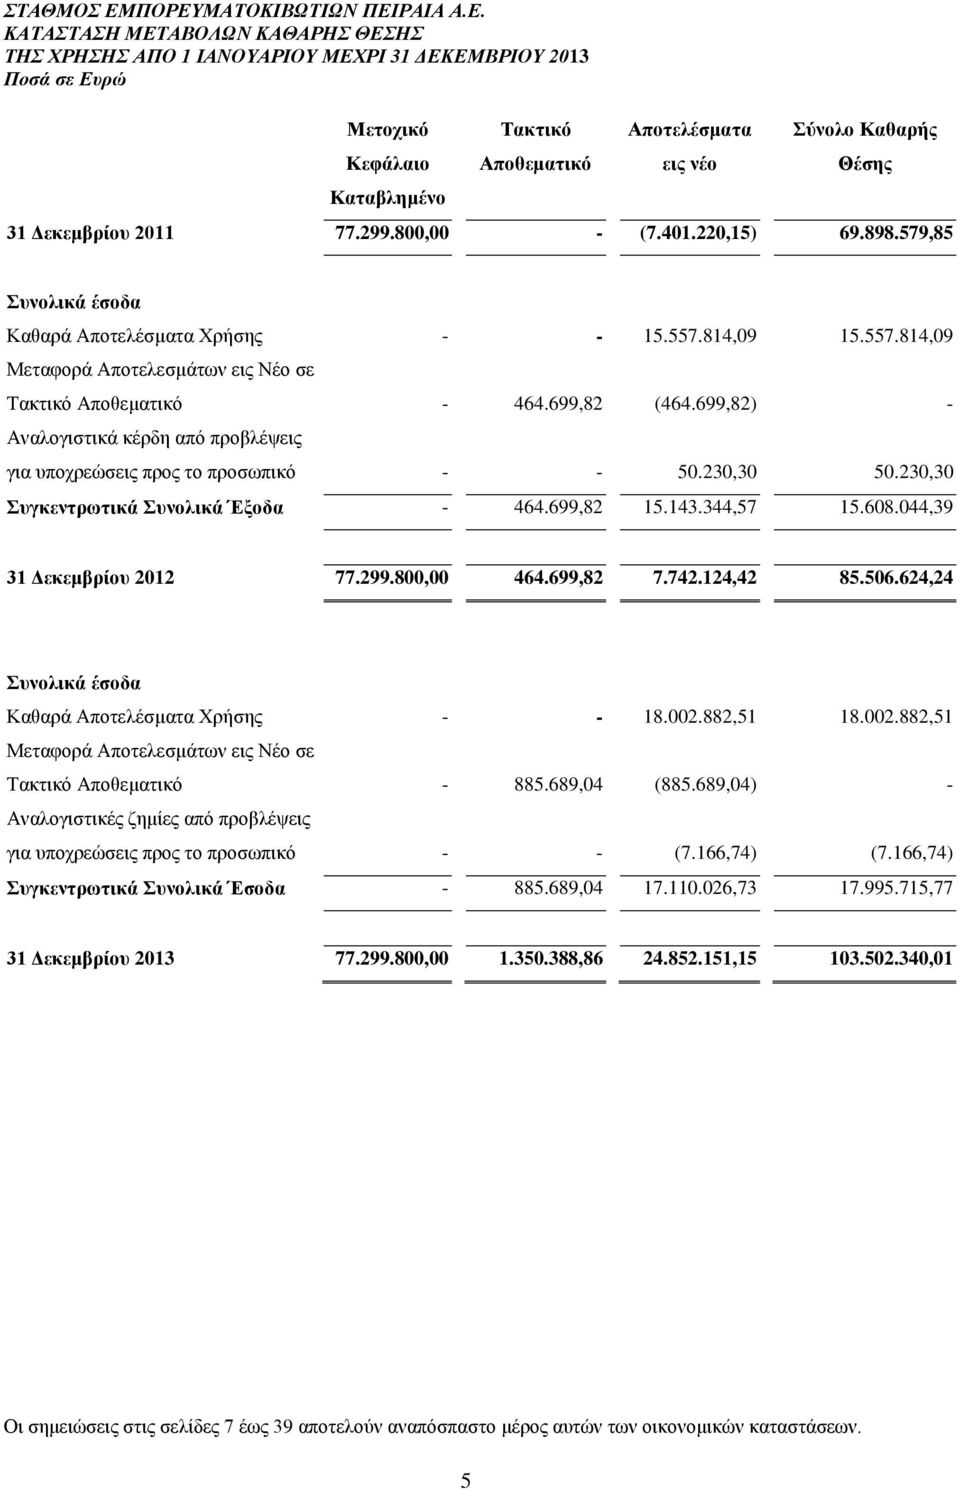 699,82) - Αναλογιστικά κέρδη από προβλέψεις για υποχρεώσεις προς το προσωπικό - - 50.230,30 50.230,30 Συγκεντρωτικά Συνολικά Έξοδα - 464.699,82 15.143.344,57 15.608.044,39 31 Δεκεμβρίου 2012 77.299.